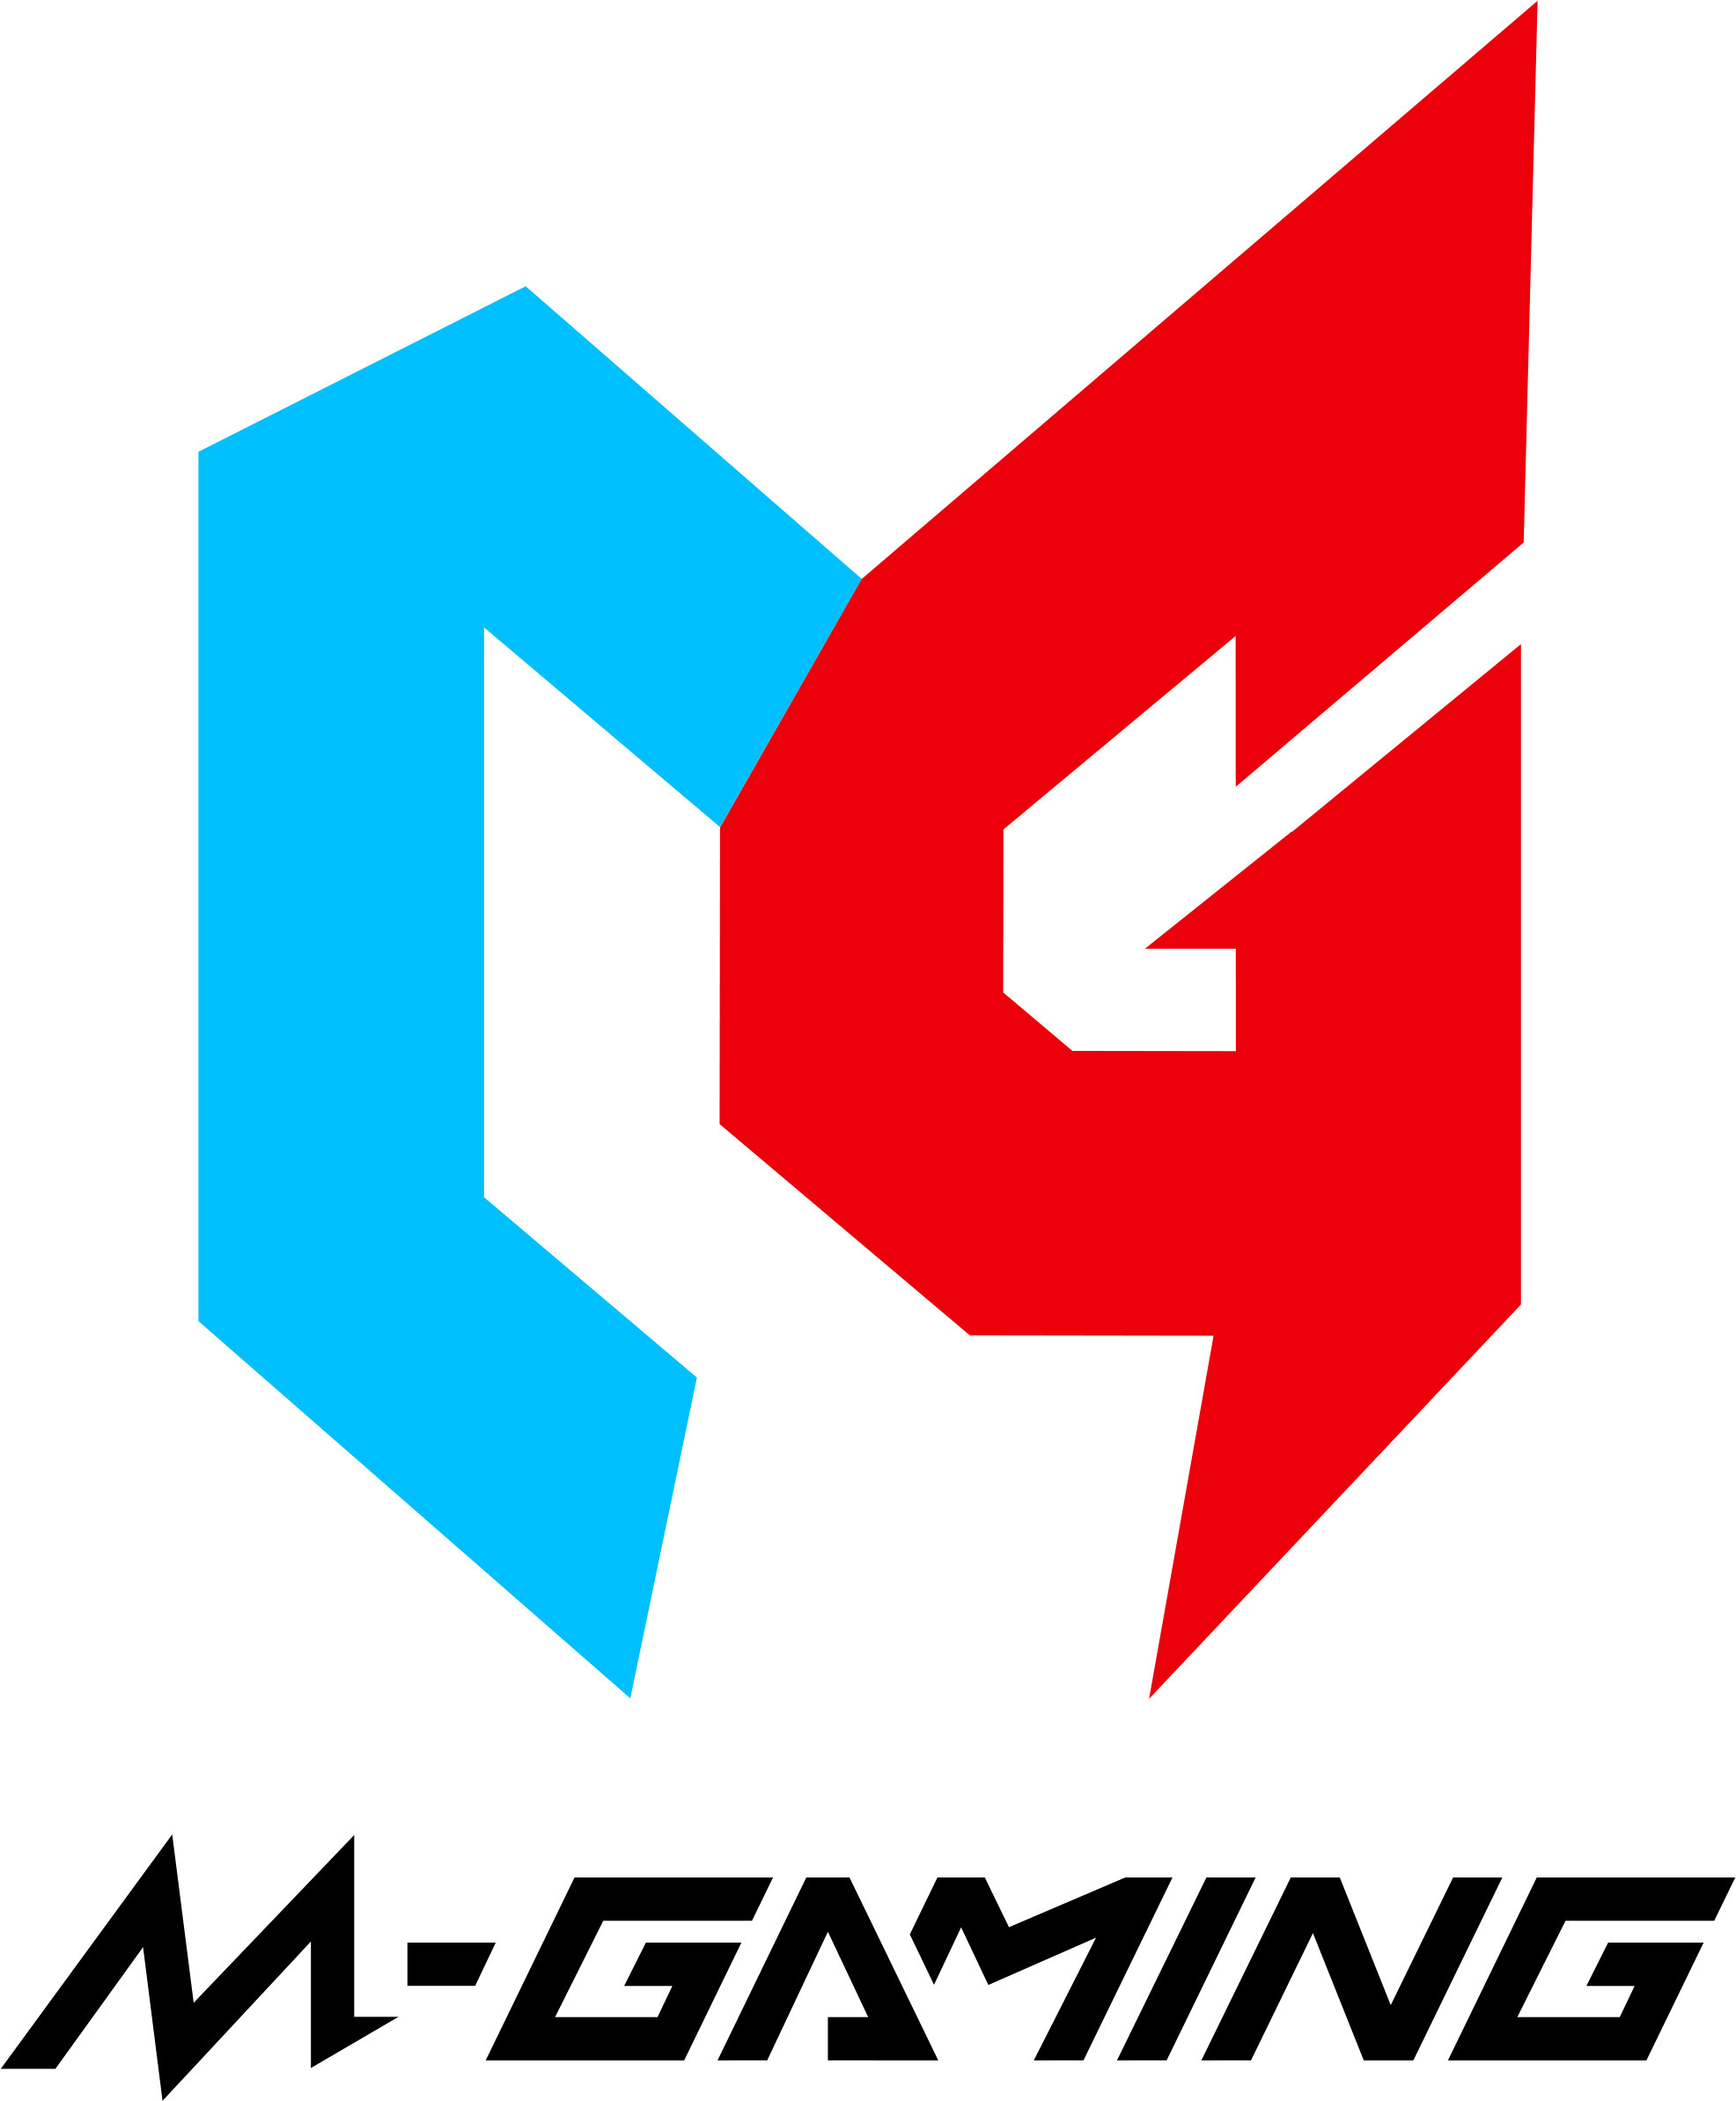 株式会社エム・エス・シーが手掛ける
ゲーミングプロジェクト「M-GAMING」誕生